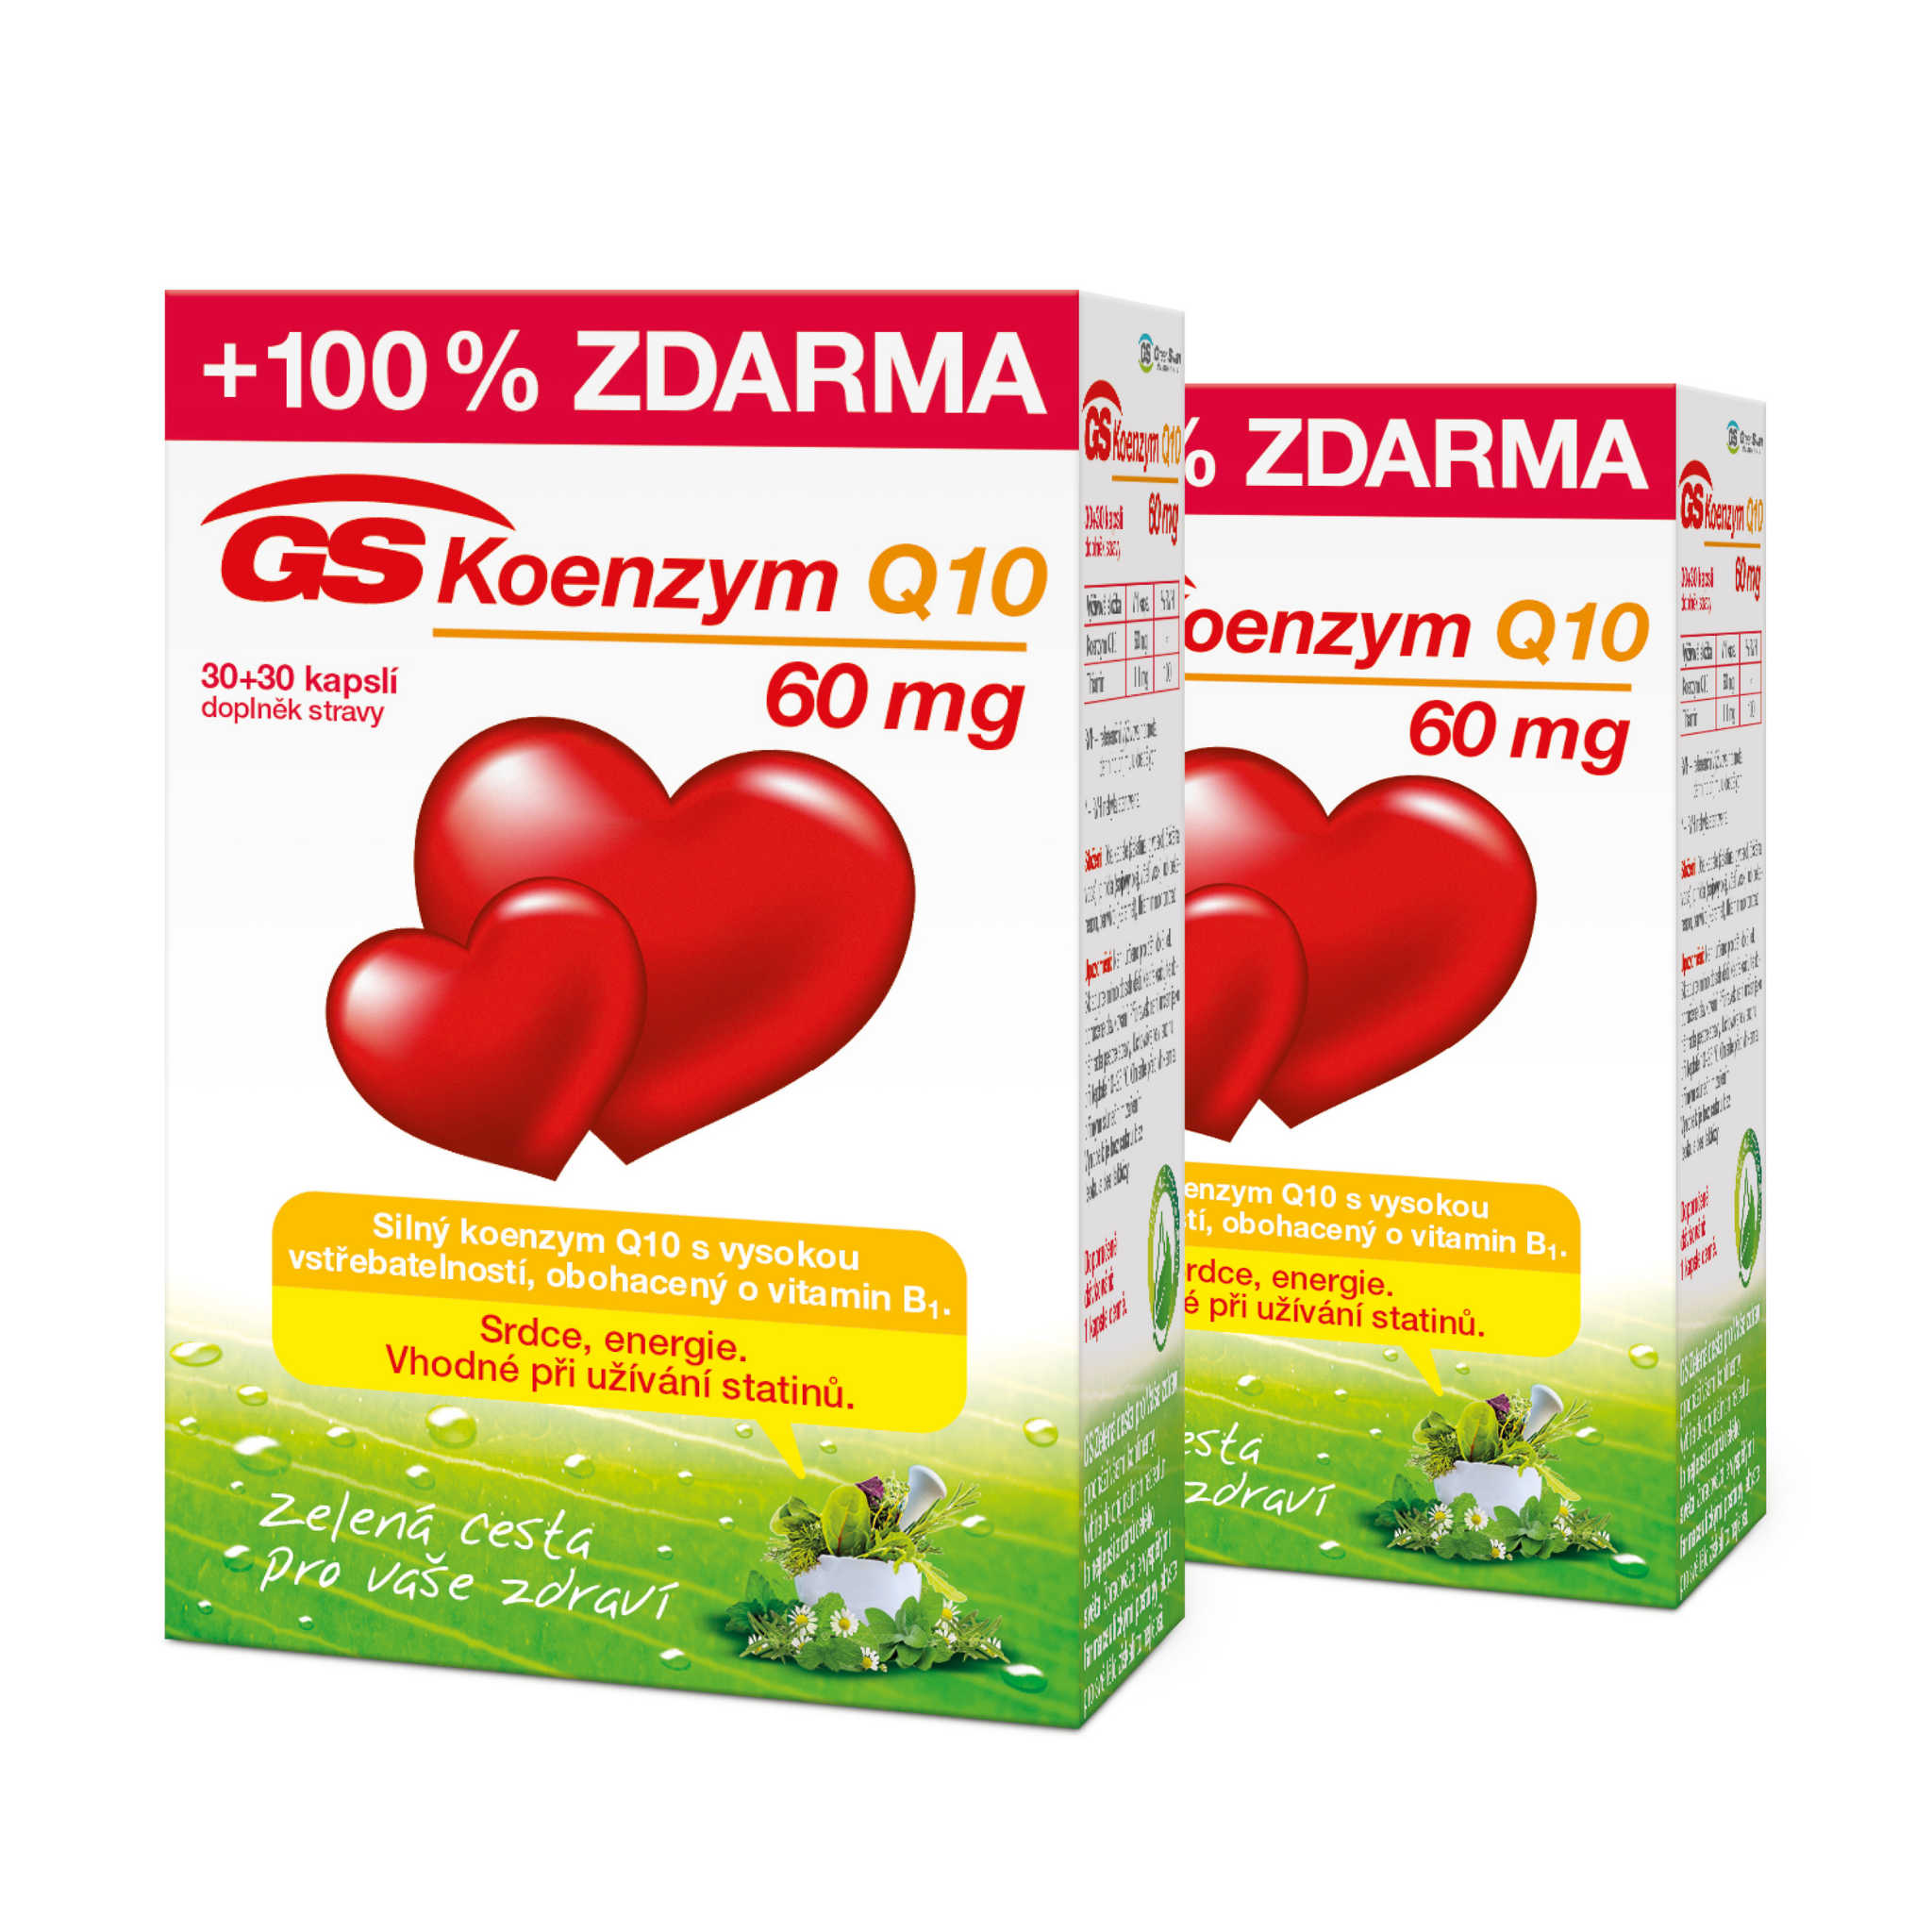 GS Koenzym Q10 60 mg, 2 × 60 kapslí